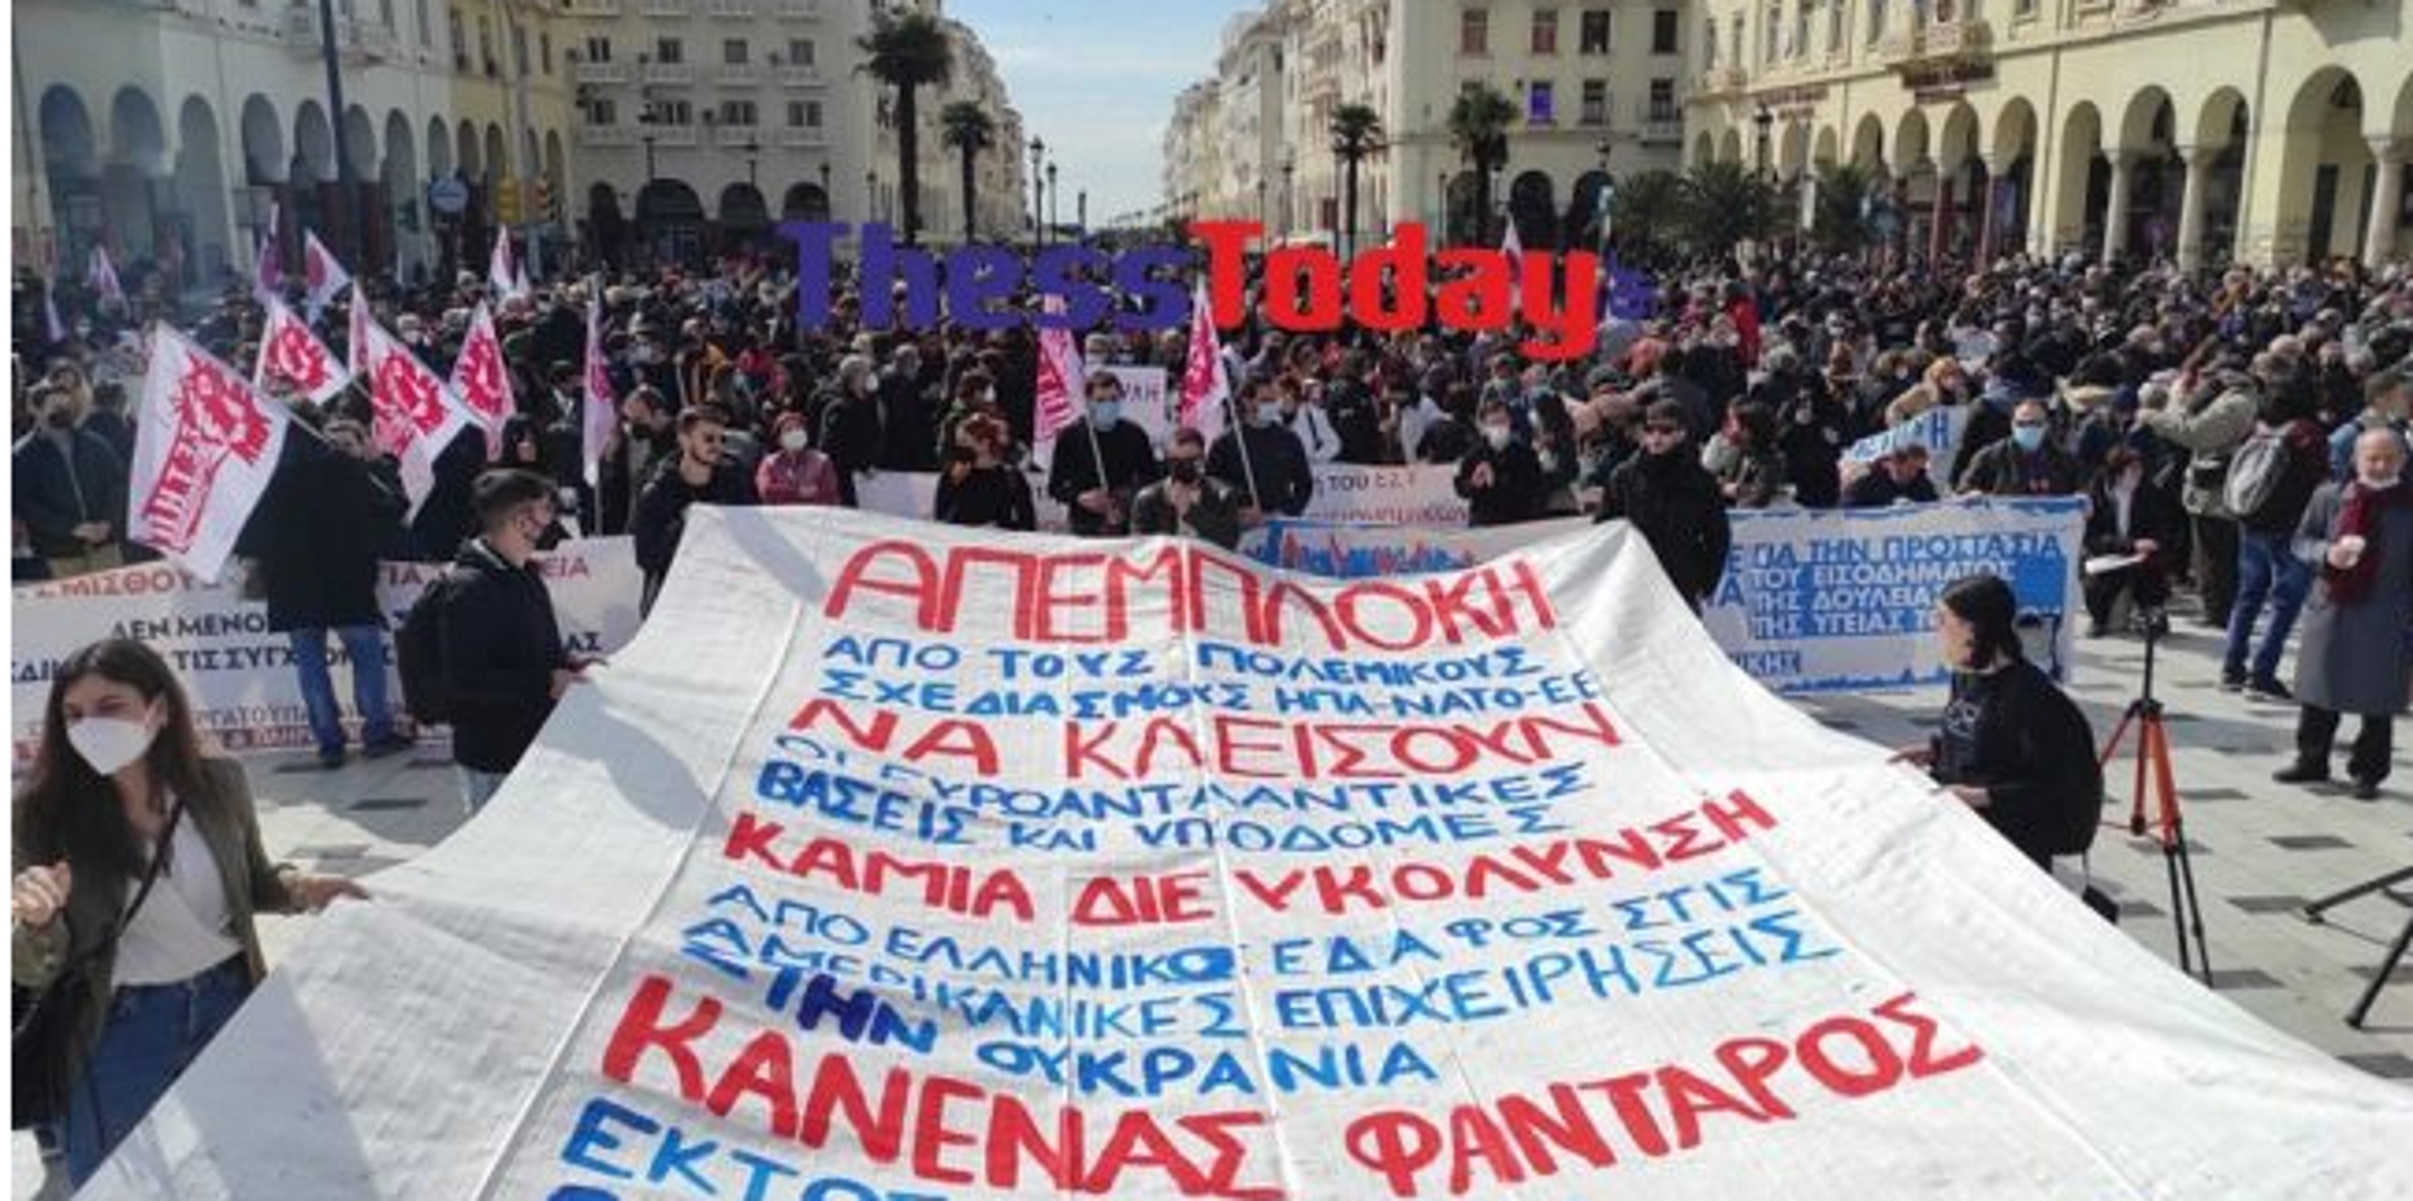 Εισβολή στην Ουκρανία: Μεγάλη αντιπολεμική πορεία στη Θεσσαλονίκη – «Κανένας Έλληνας φαντάρος σε άλλη χώρα»